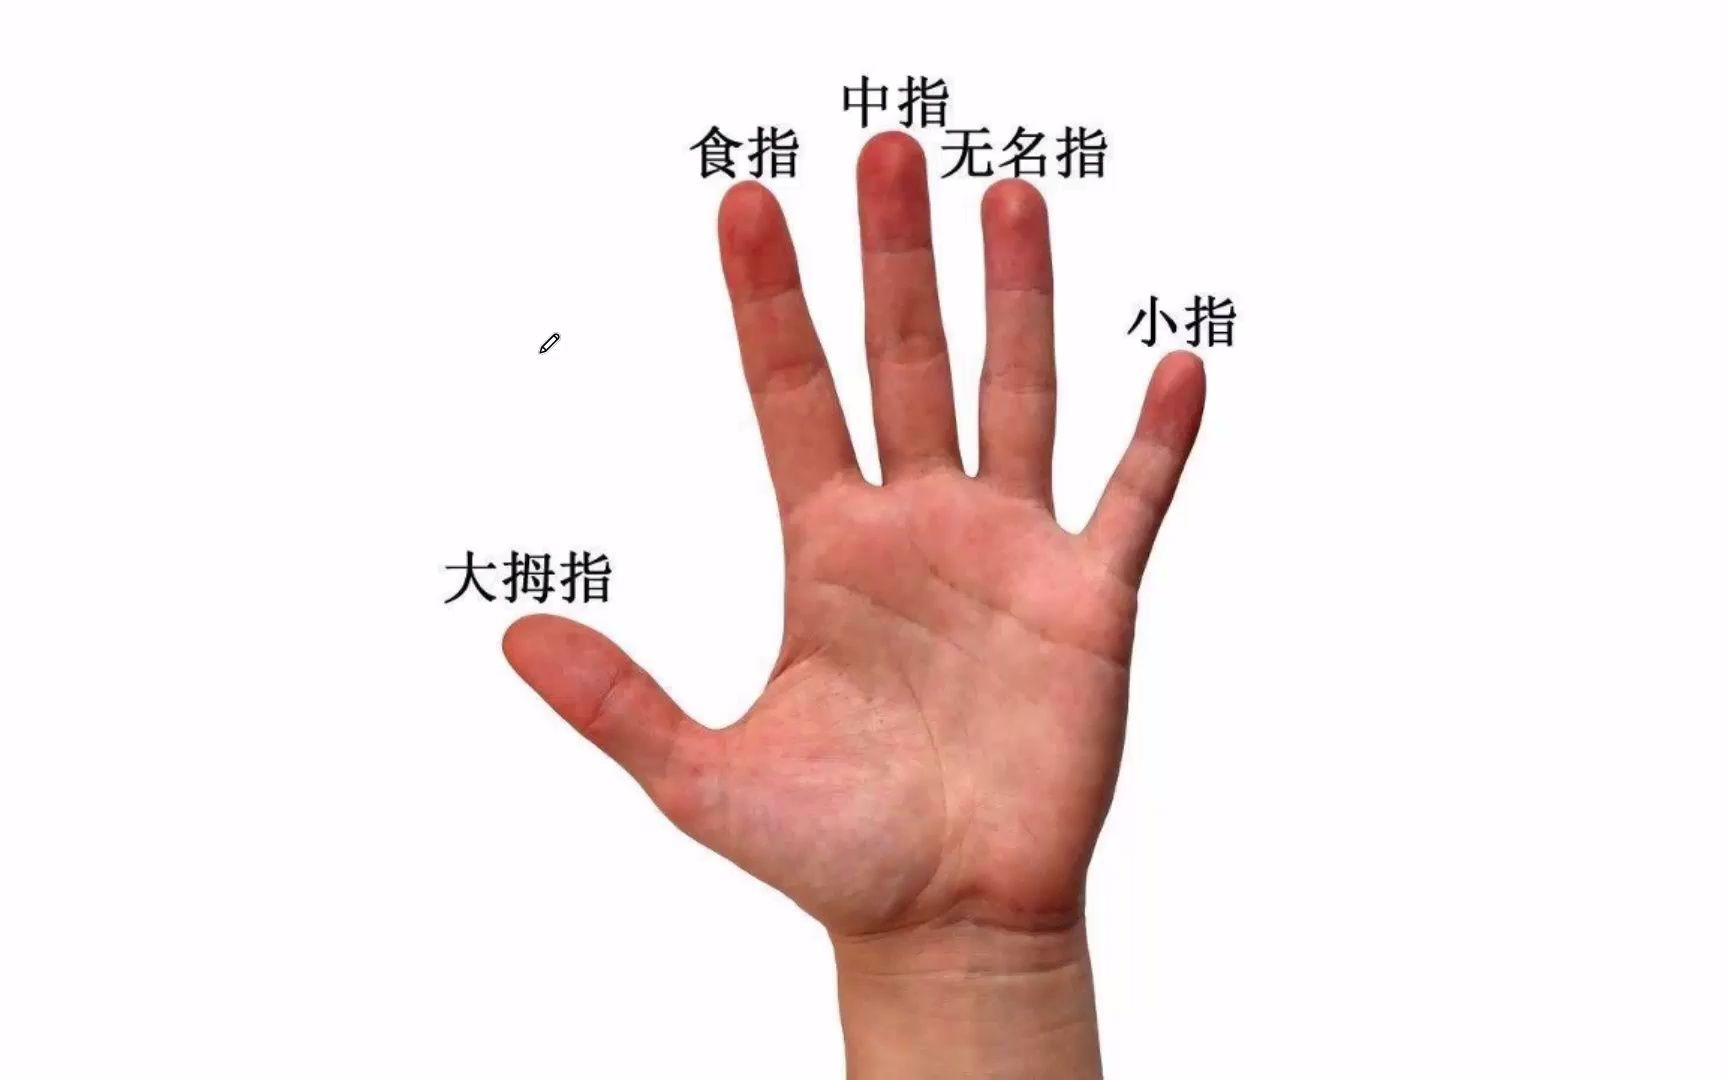 手掌中的五根手指,分别代表了什么?